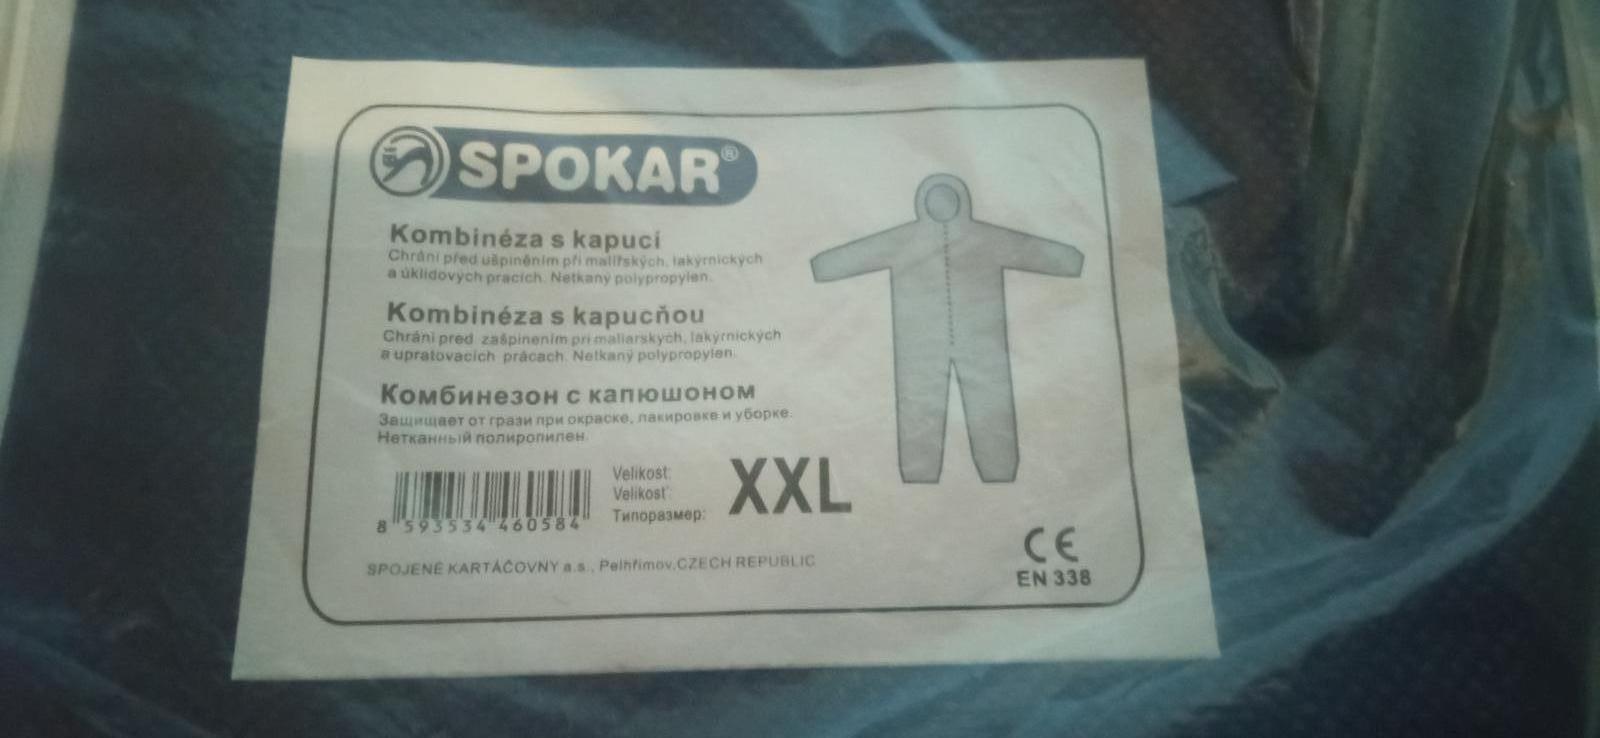 Spokar kombinéza s kapucňou XXL - Oblečenie, obuv a doplnky